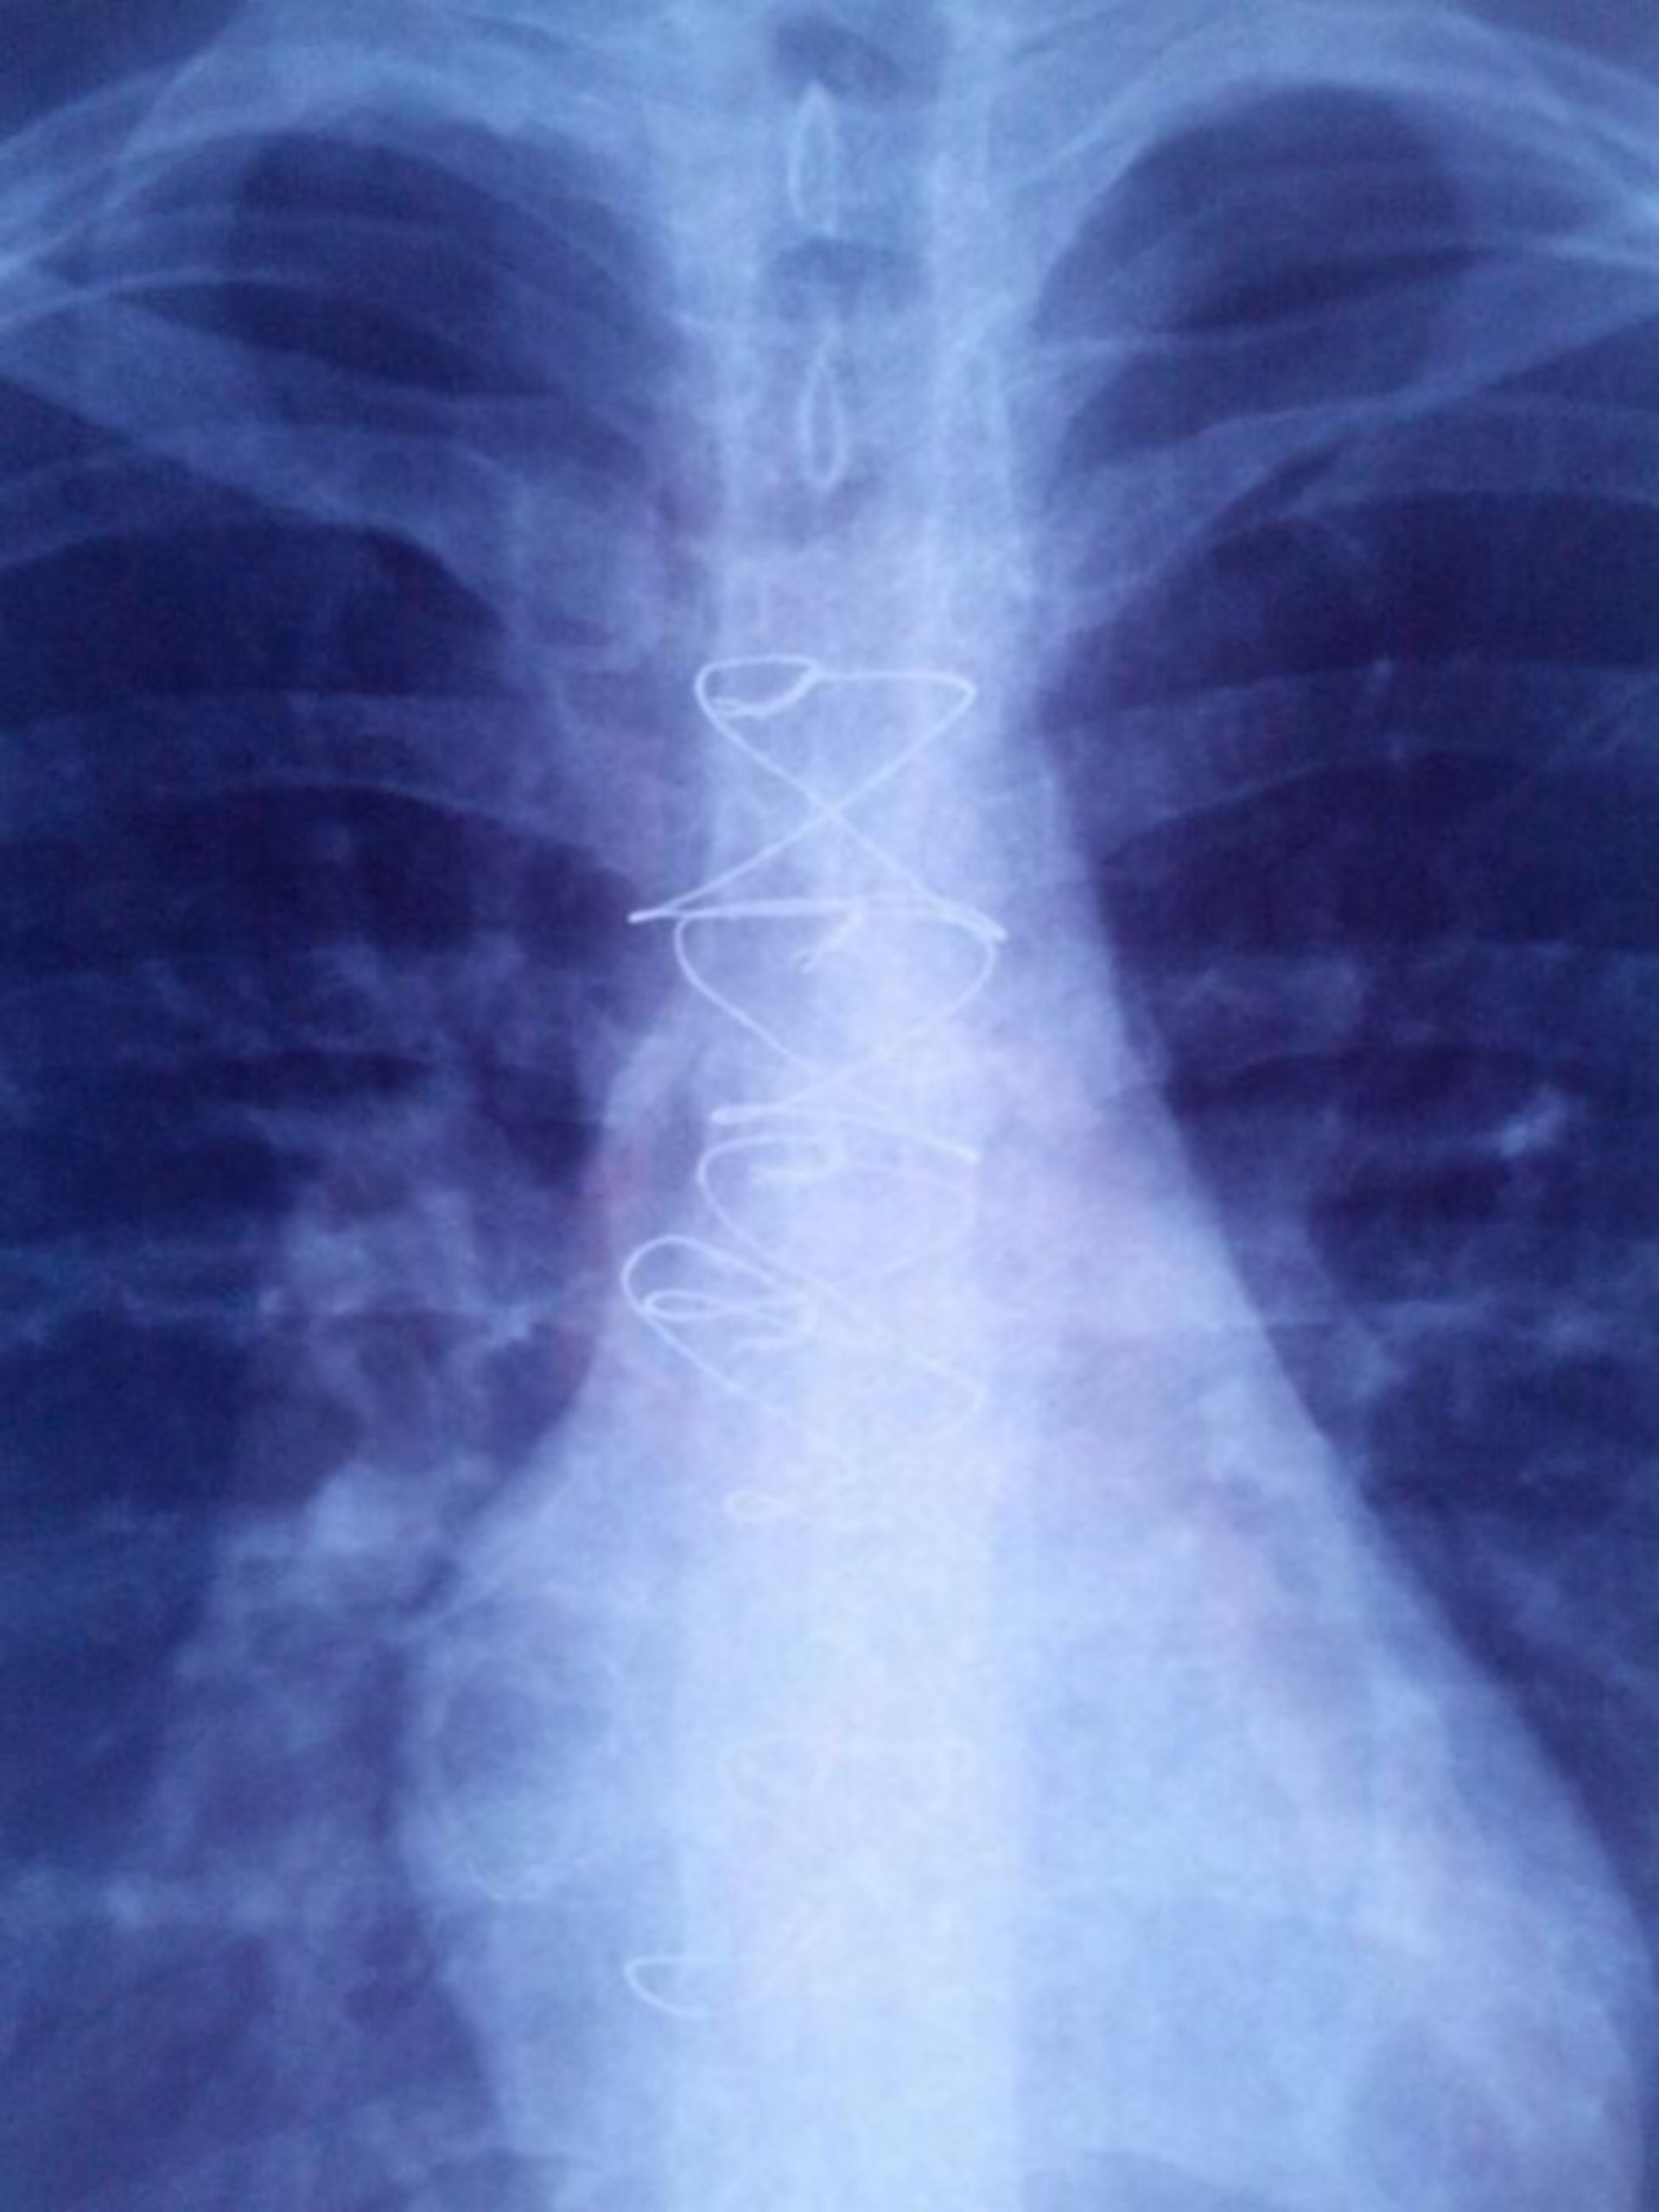 Brustbein Röntgenbild 5 Jahre nach der Operation